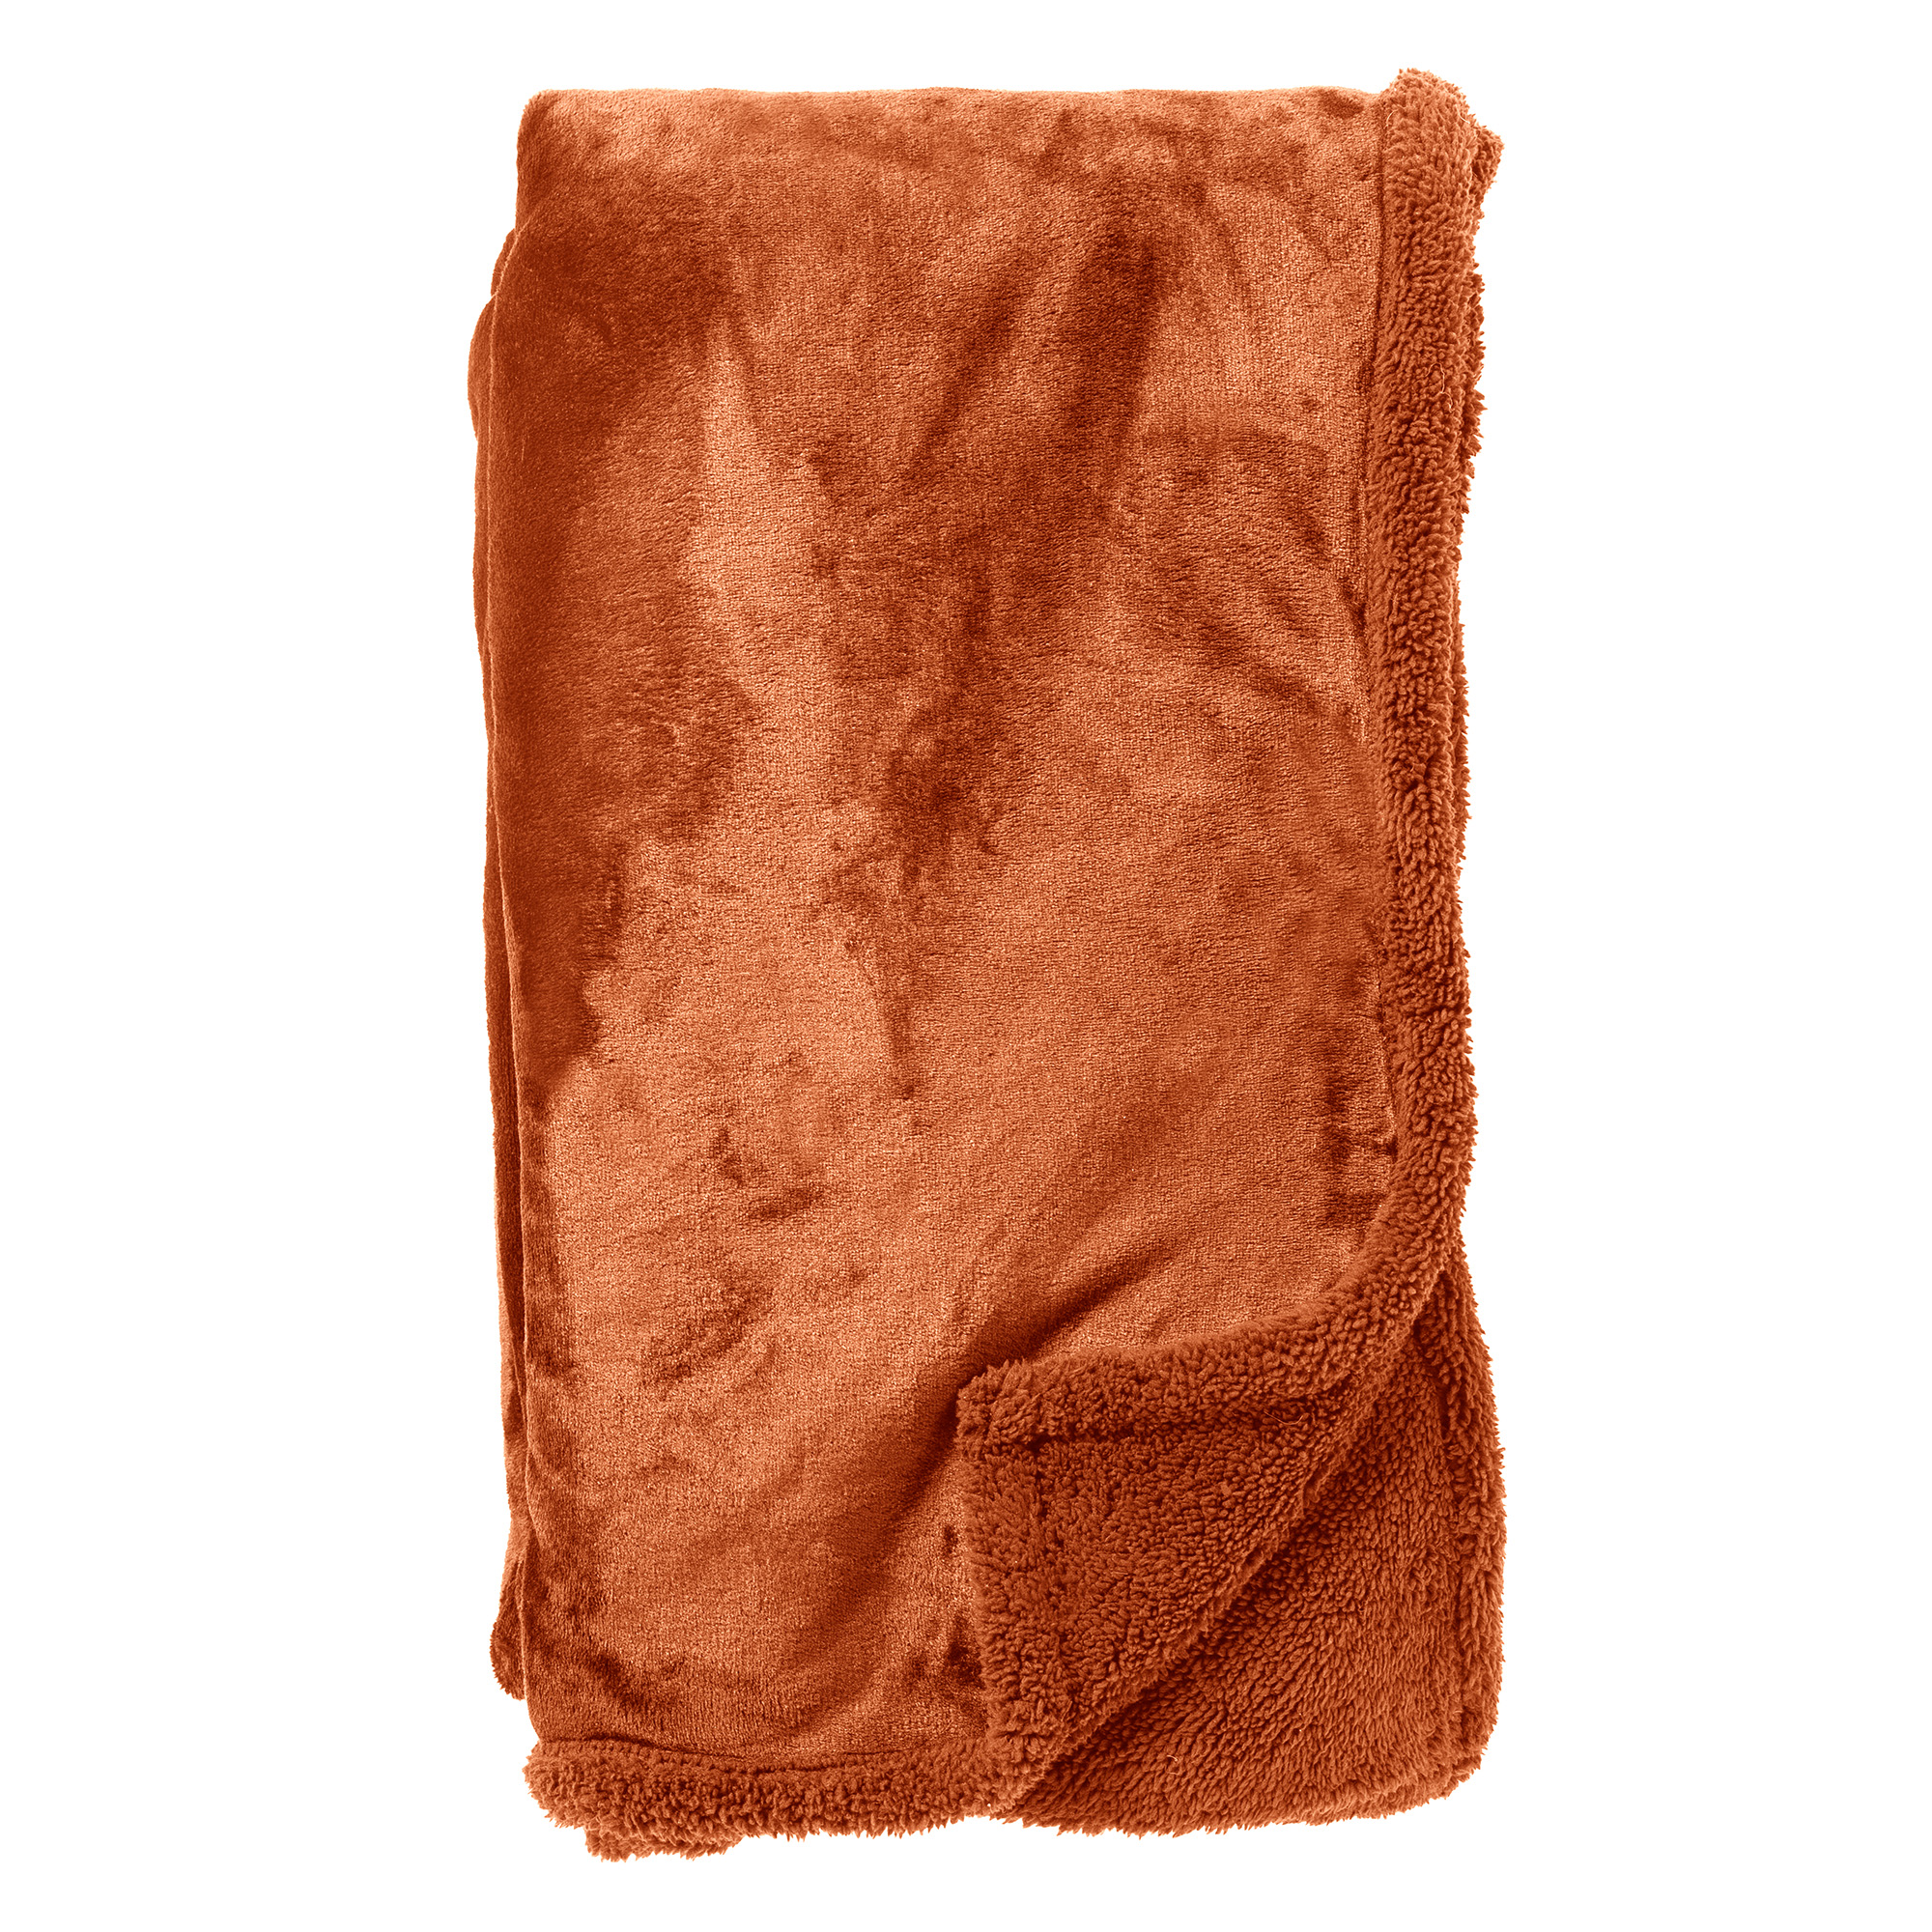 STANLEY - Plaid 150x200 cm - fleece deken met teddy en fleece - Potters Clay - oranje terra